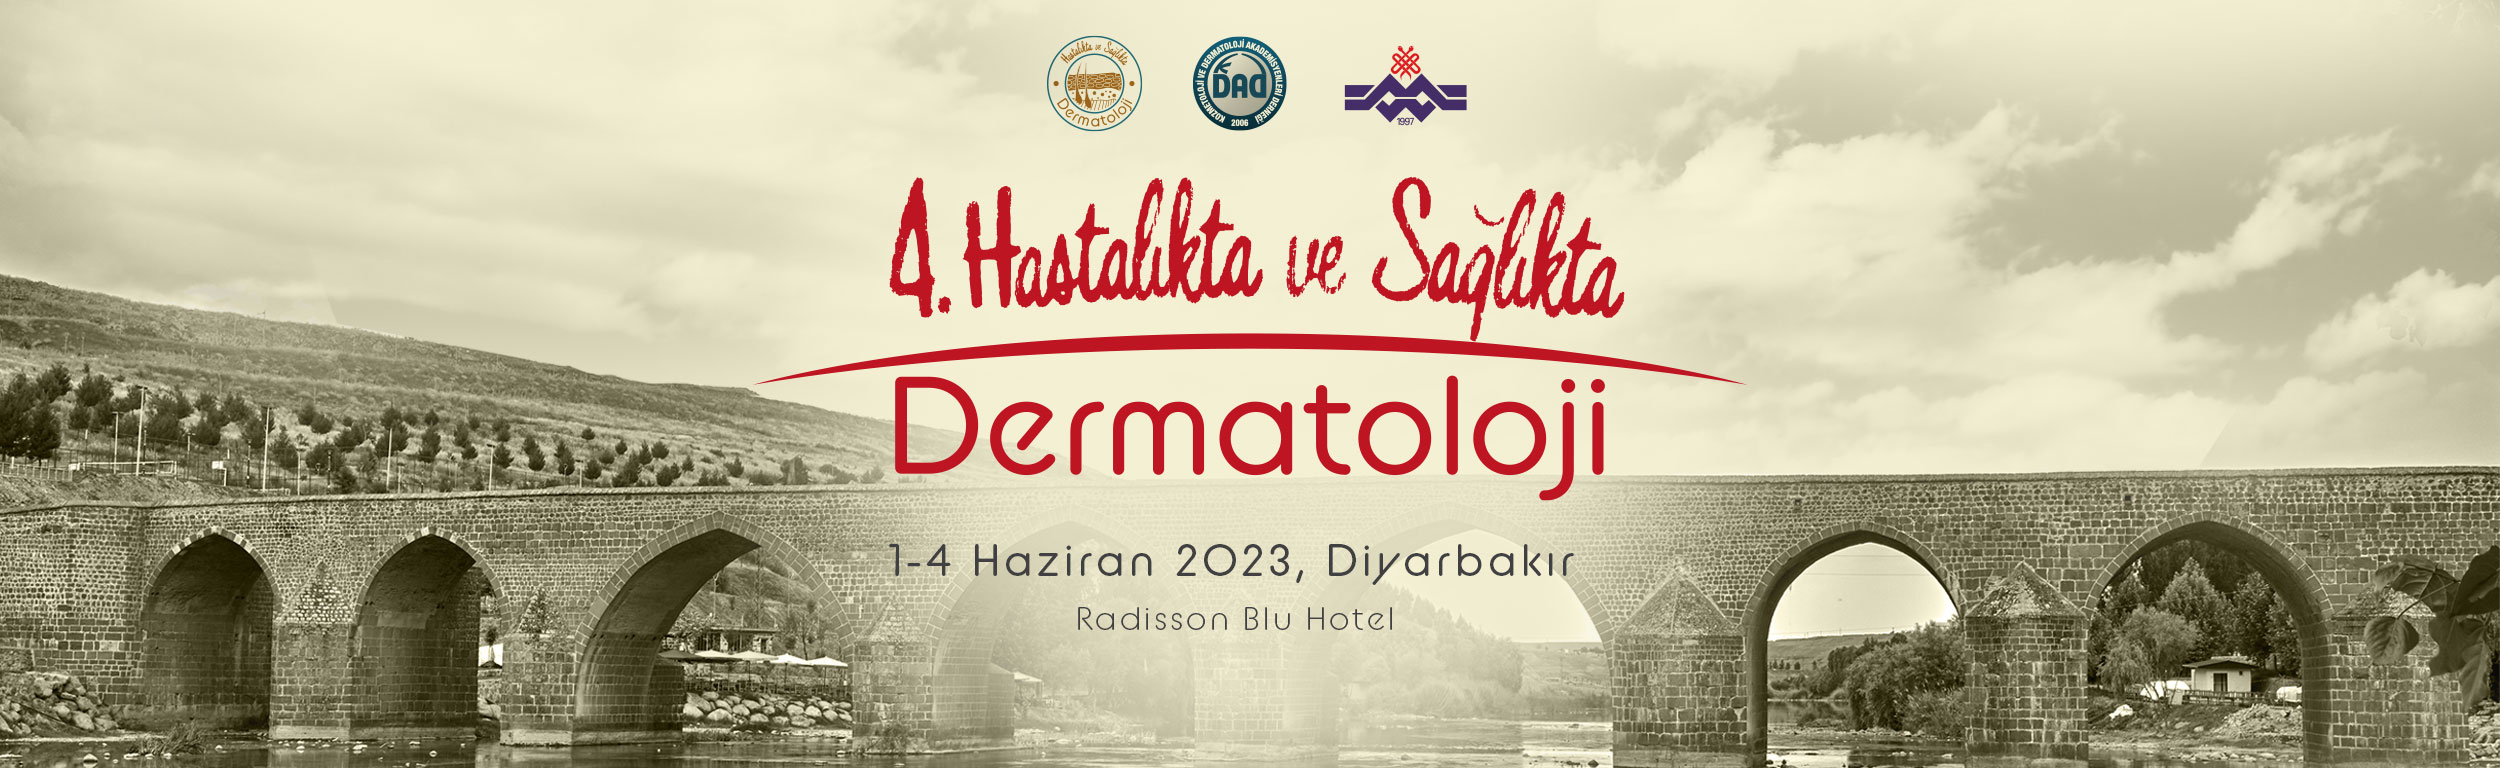 4. Hastalıkta ve Sağlıkta Dermatoloji Kongresi